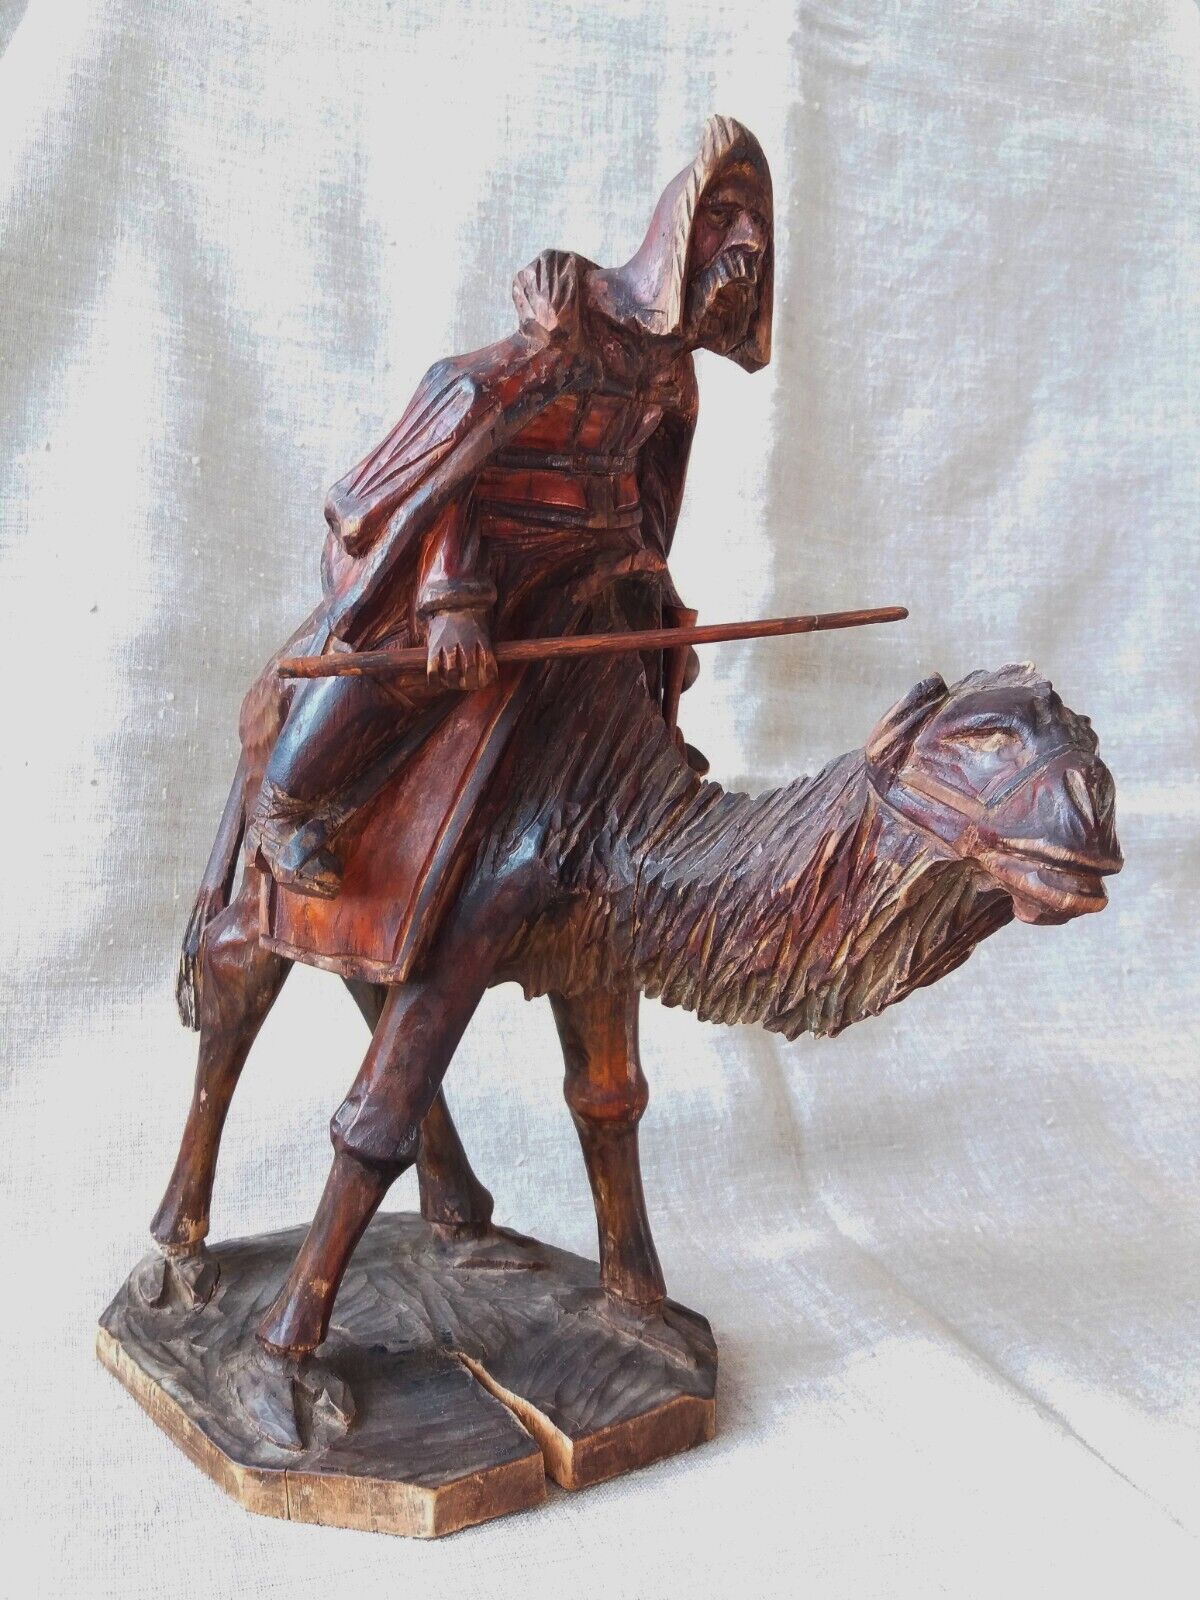 Old Antique Wooden Sculpture Desert Nomad on Camel. Rare Wood Carving. UAE